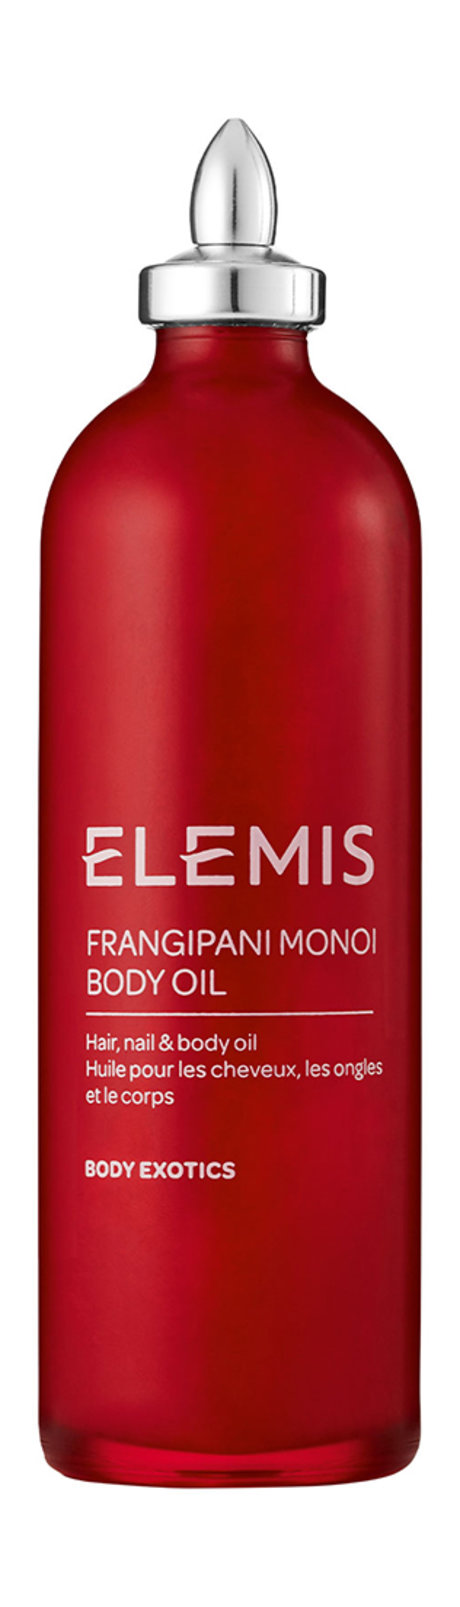 elemis frangipani monoi body oil